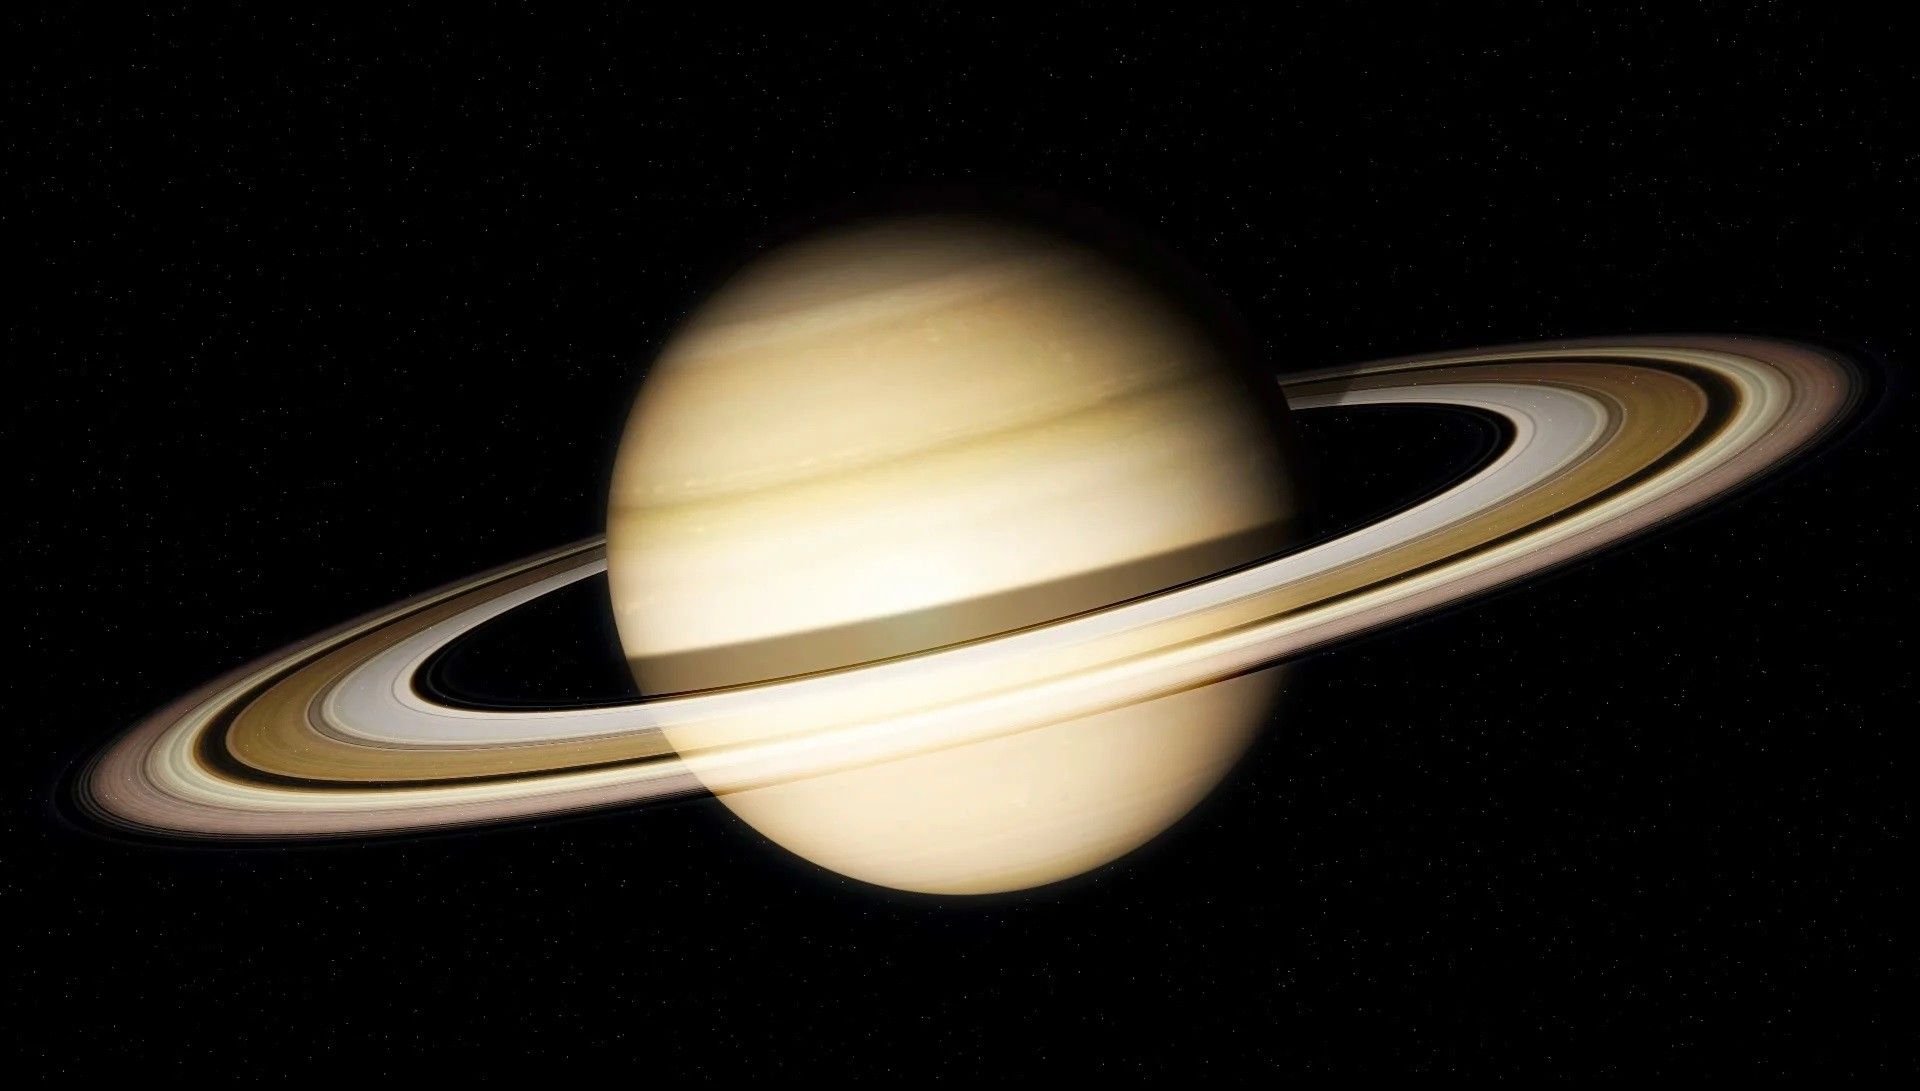 Планеты с кольцами в солнечной системе названия